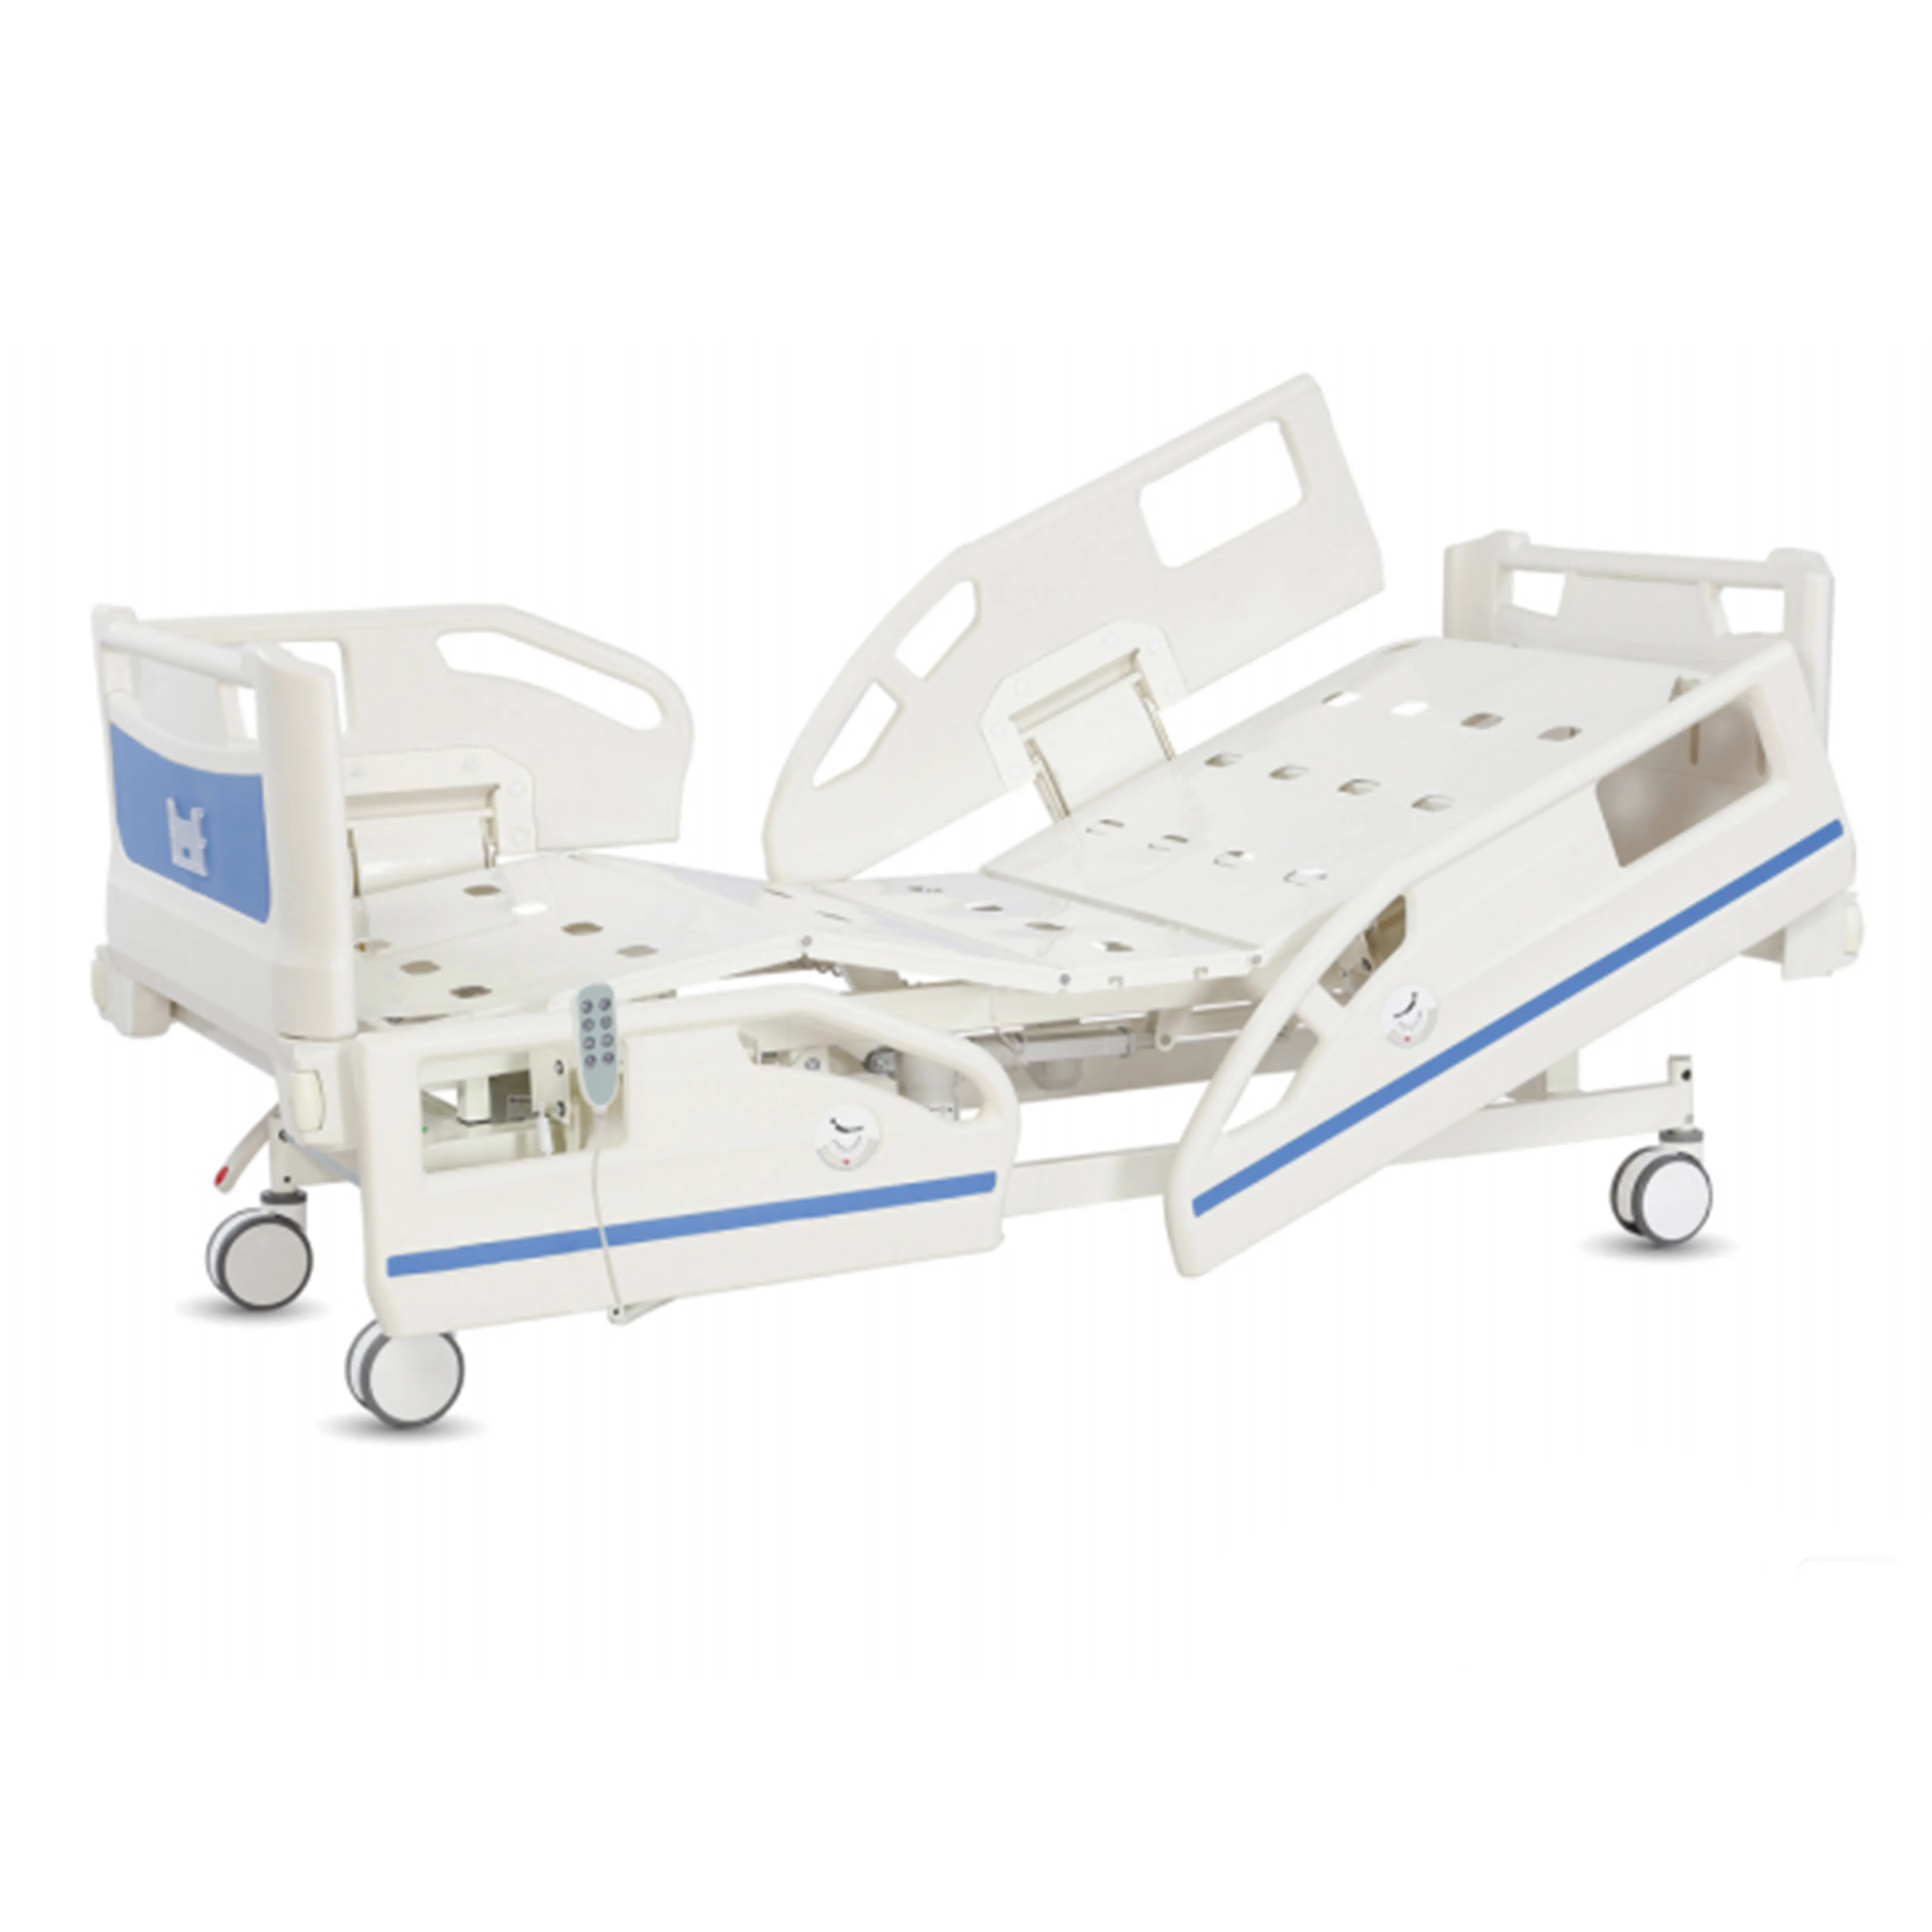 Cama elétrica EB-4 de três funções para UTI com controlador manual para cama elétrica hospitalar